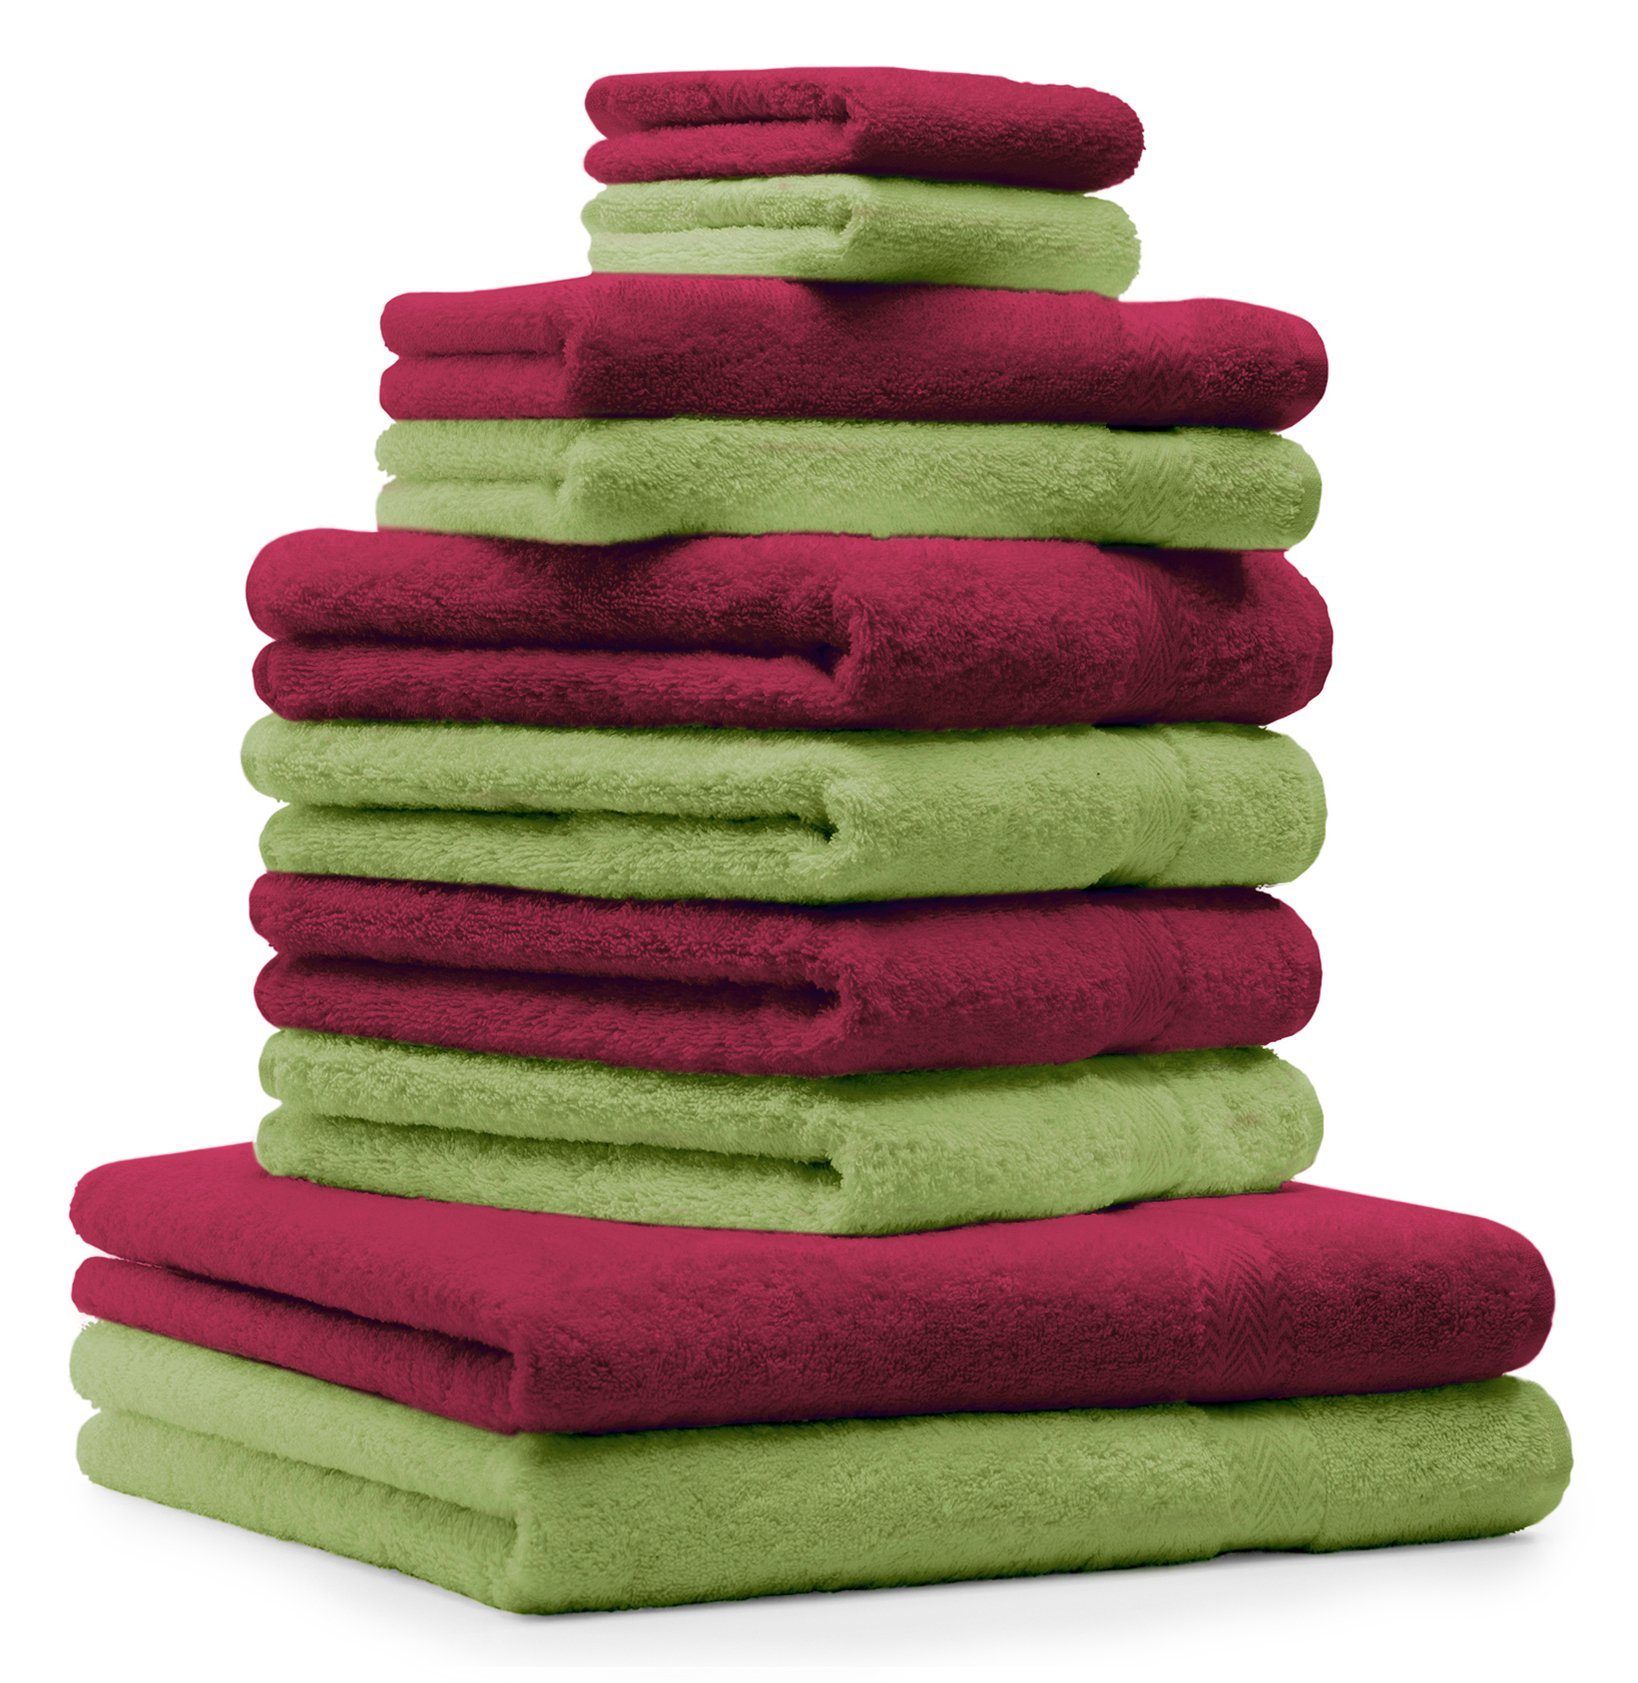 Betz Handtuch Set 10-TLG. Handtuch-Set Classic 100% Baumwolle dunkelrot und apfelgrün, 100% Baumwolle